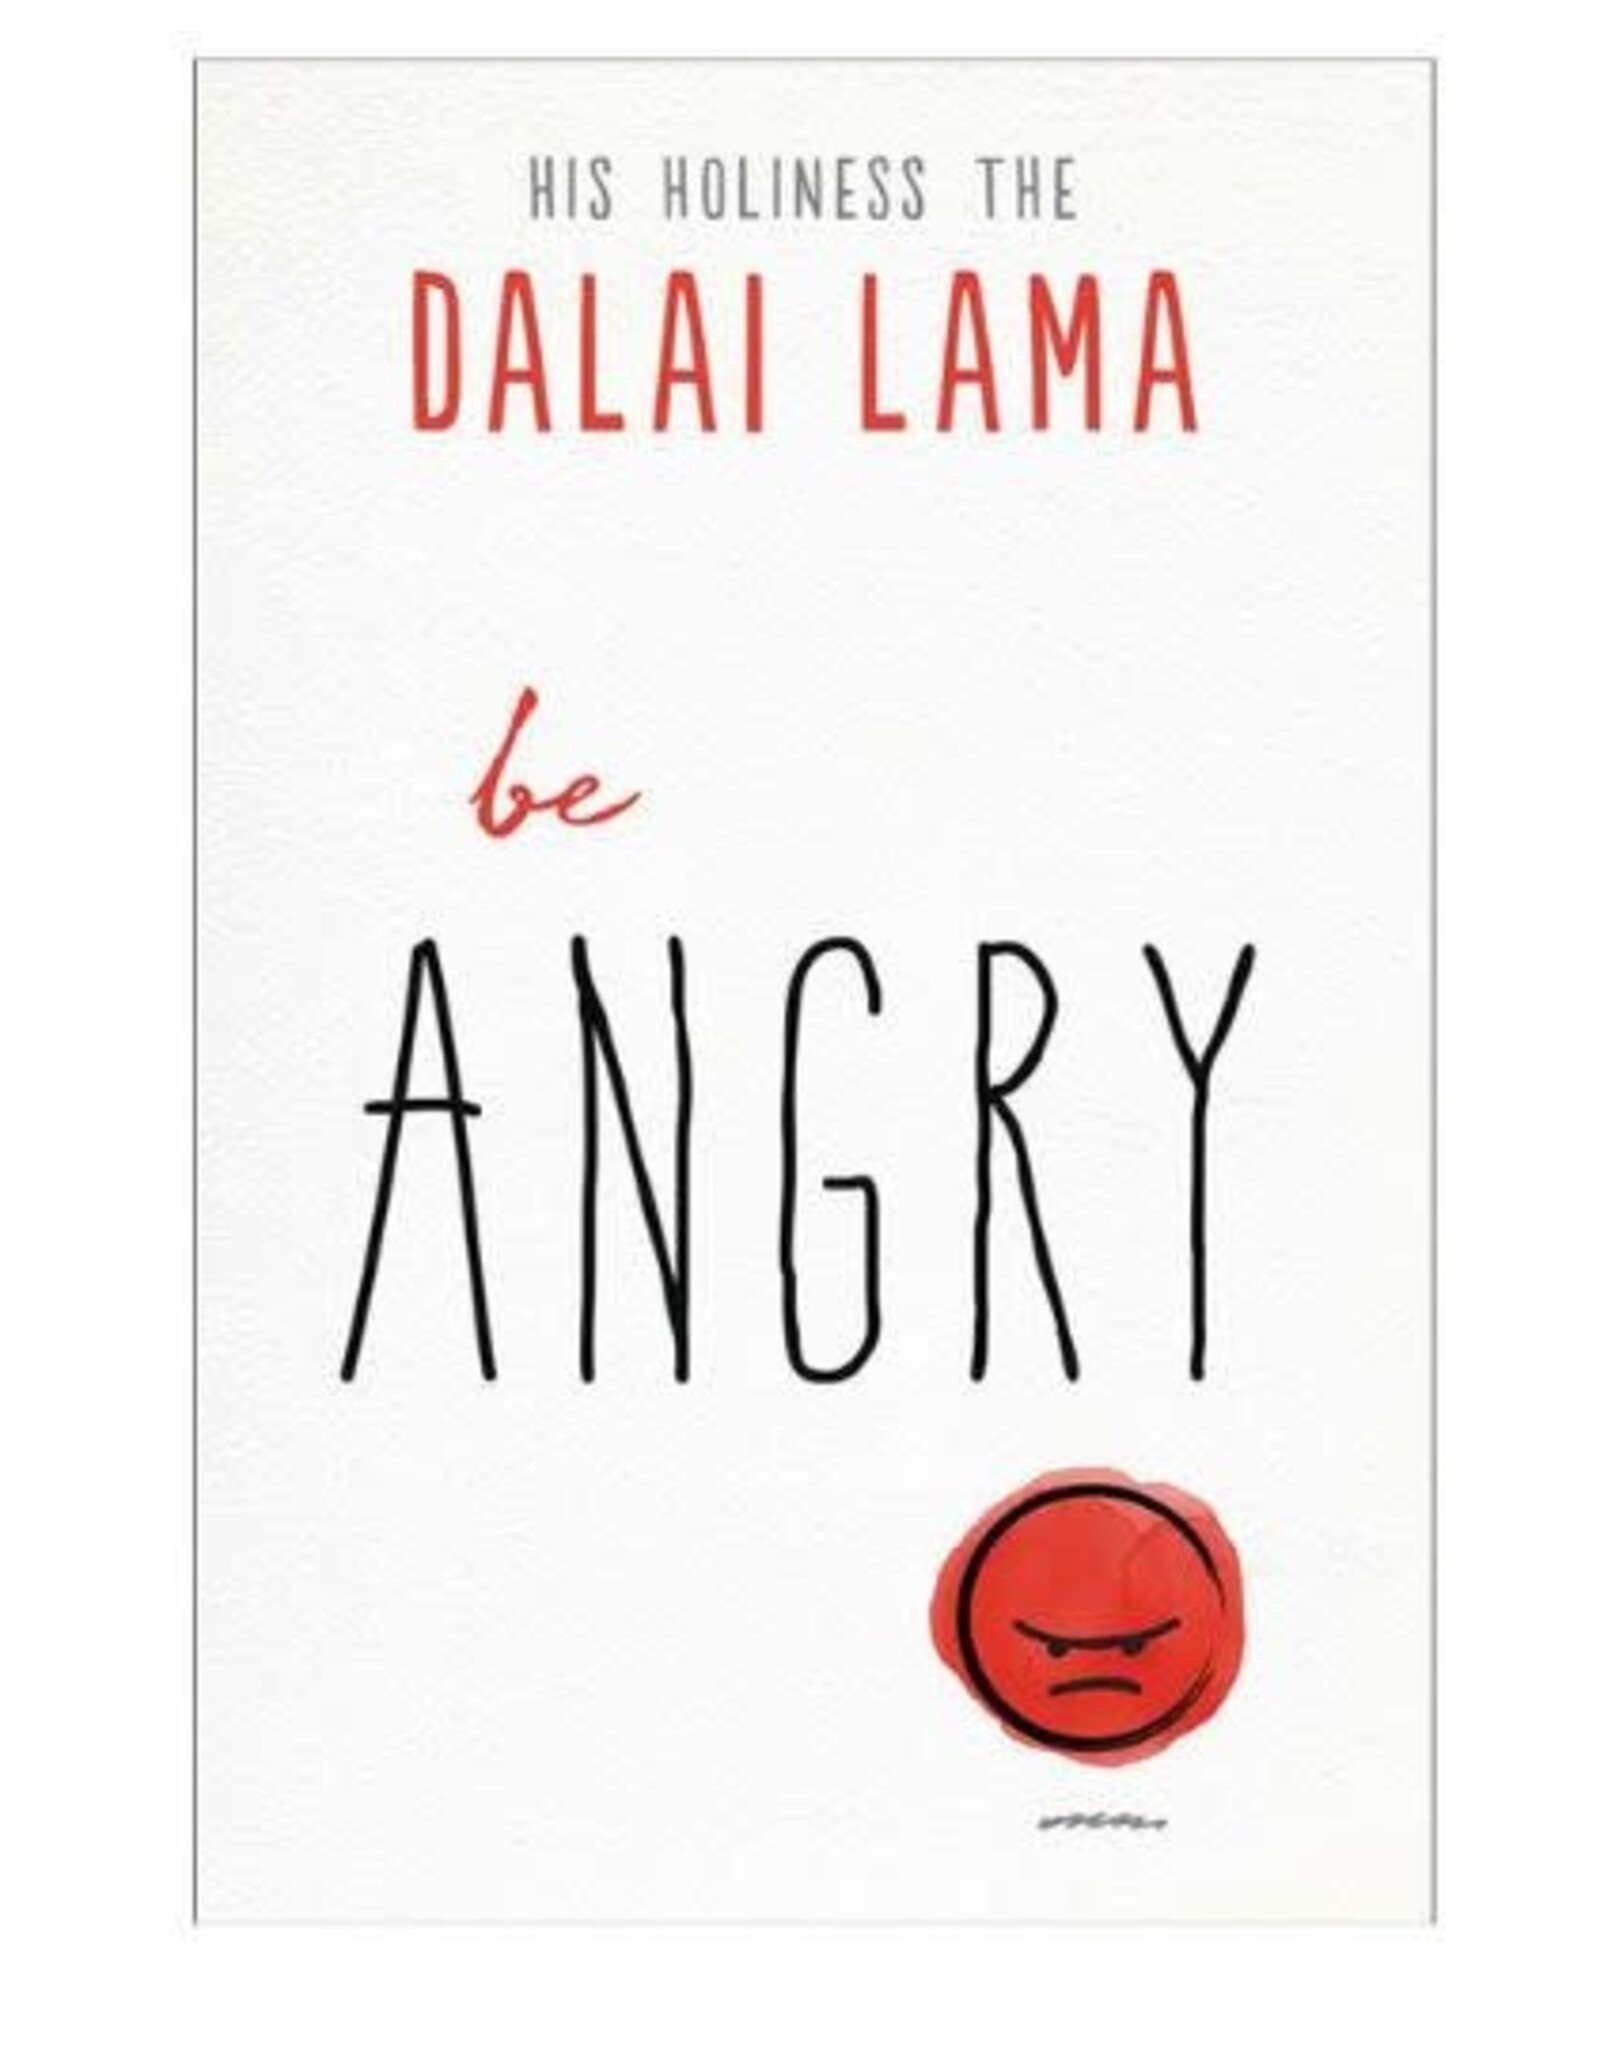 Dalai Lama Be Angry by Dalai Lama